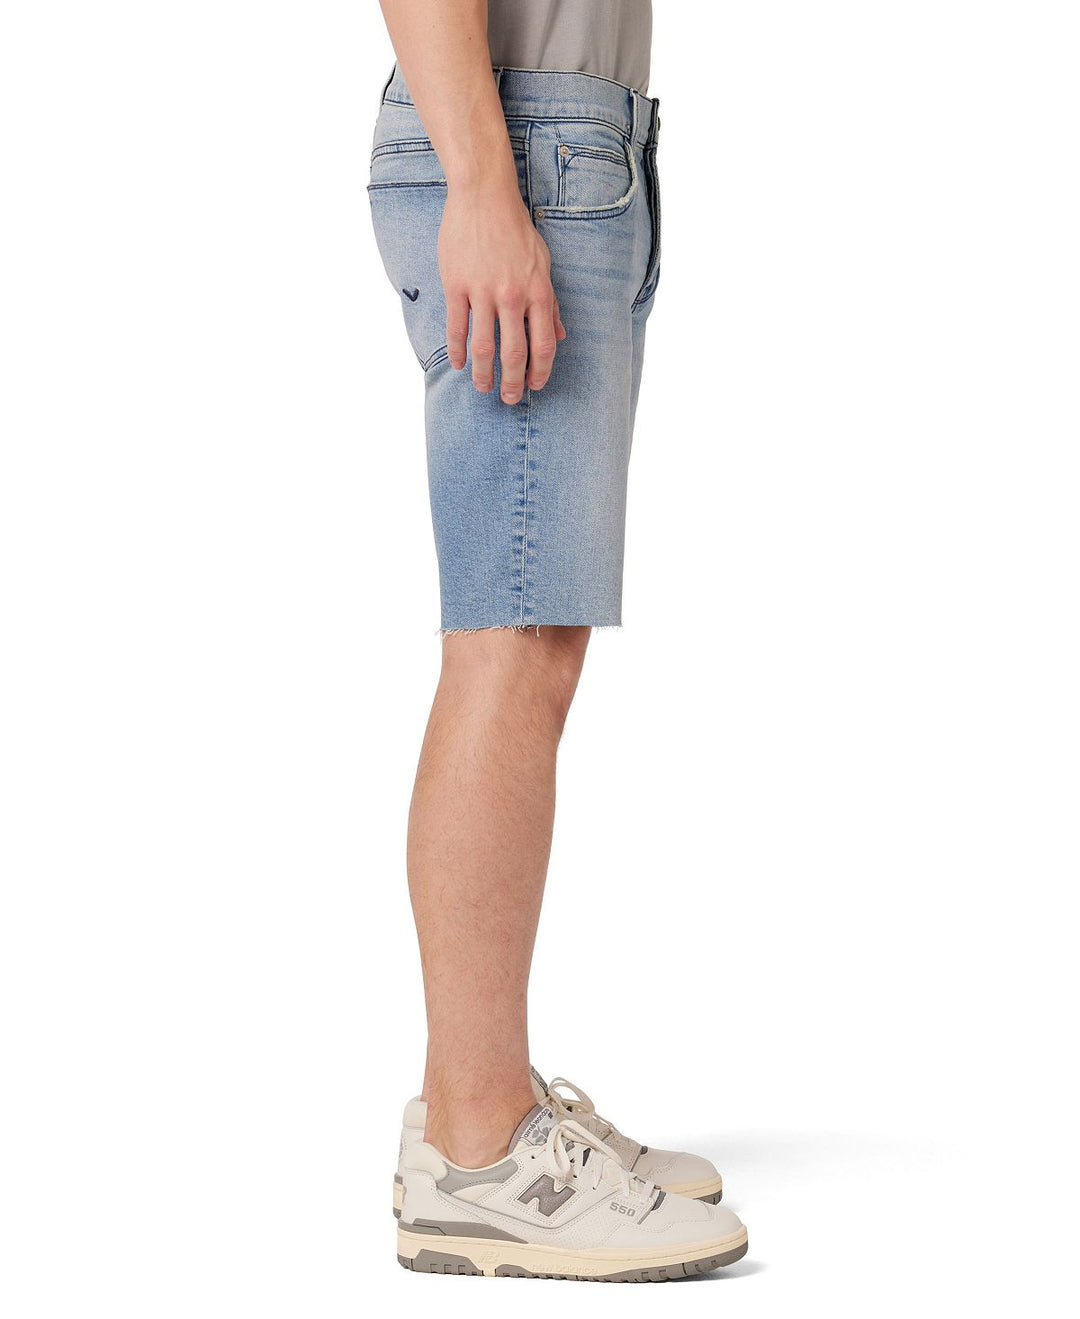 Hdsn Men's Shorts Blue Size 32